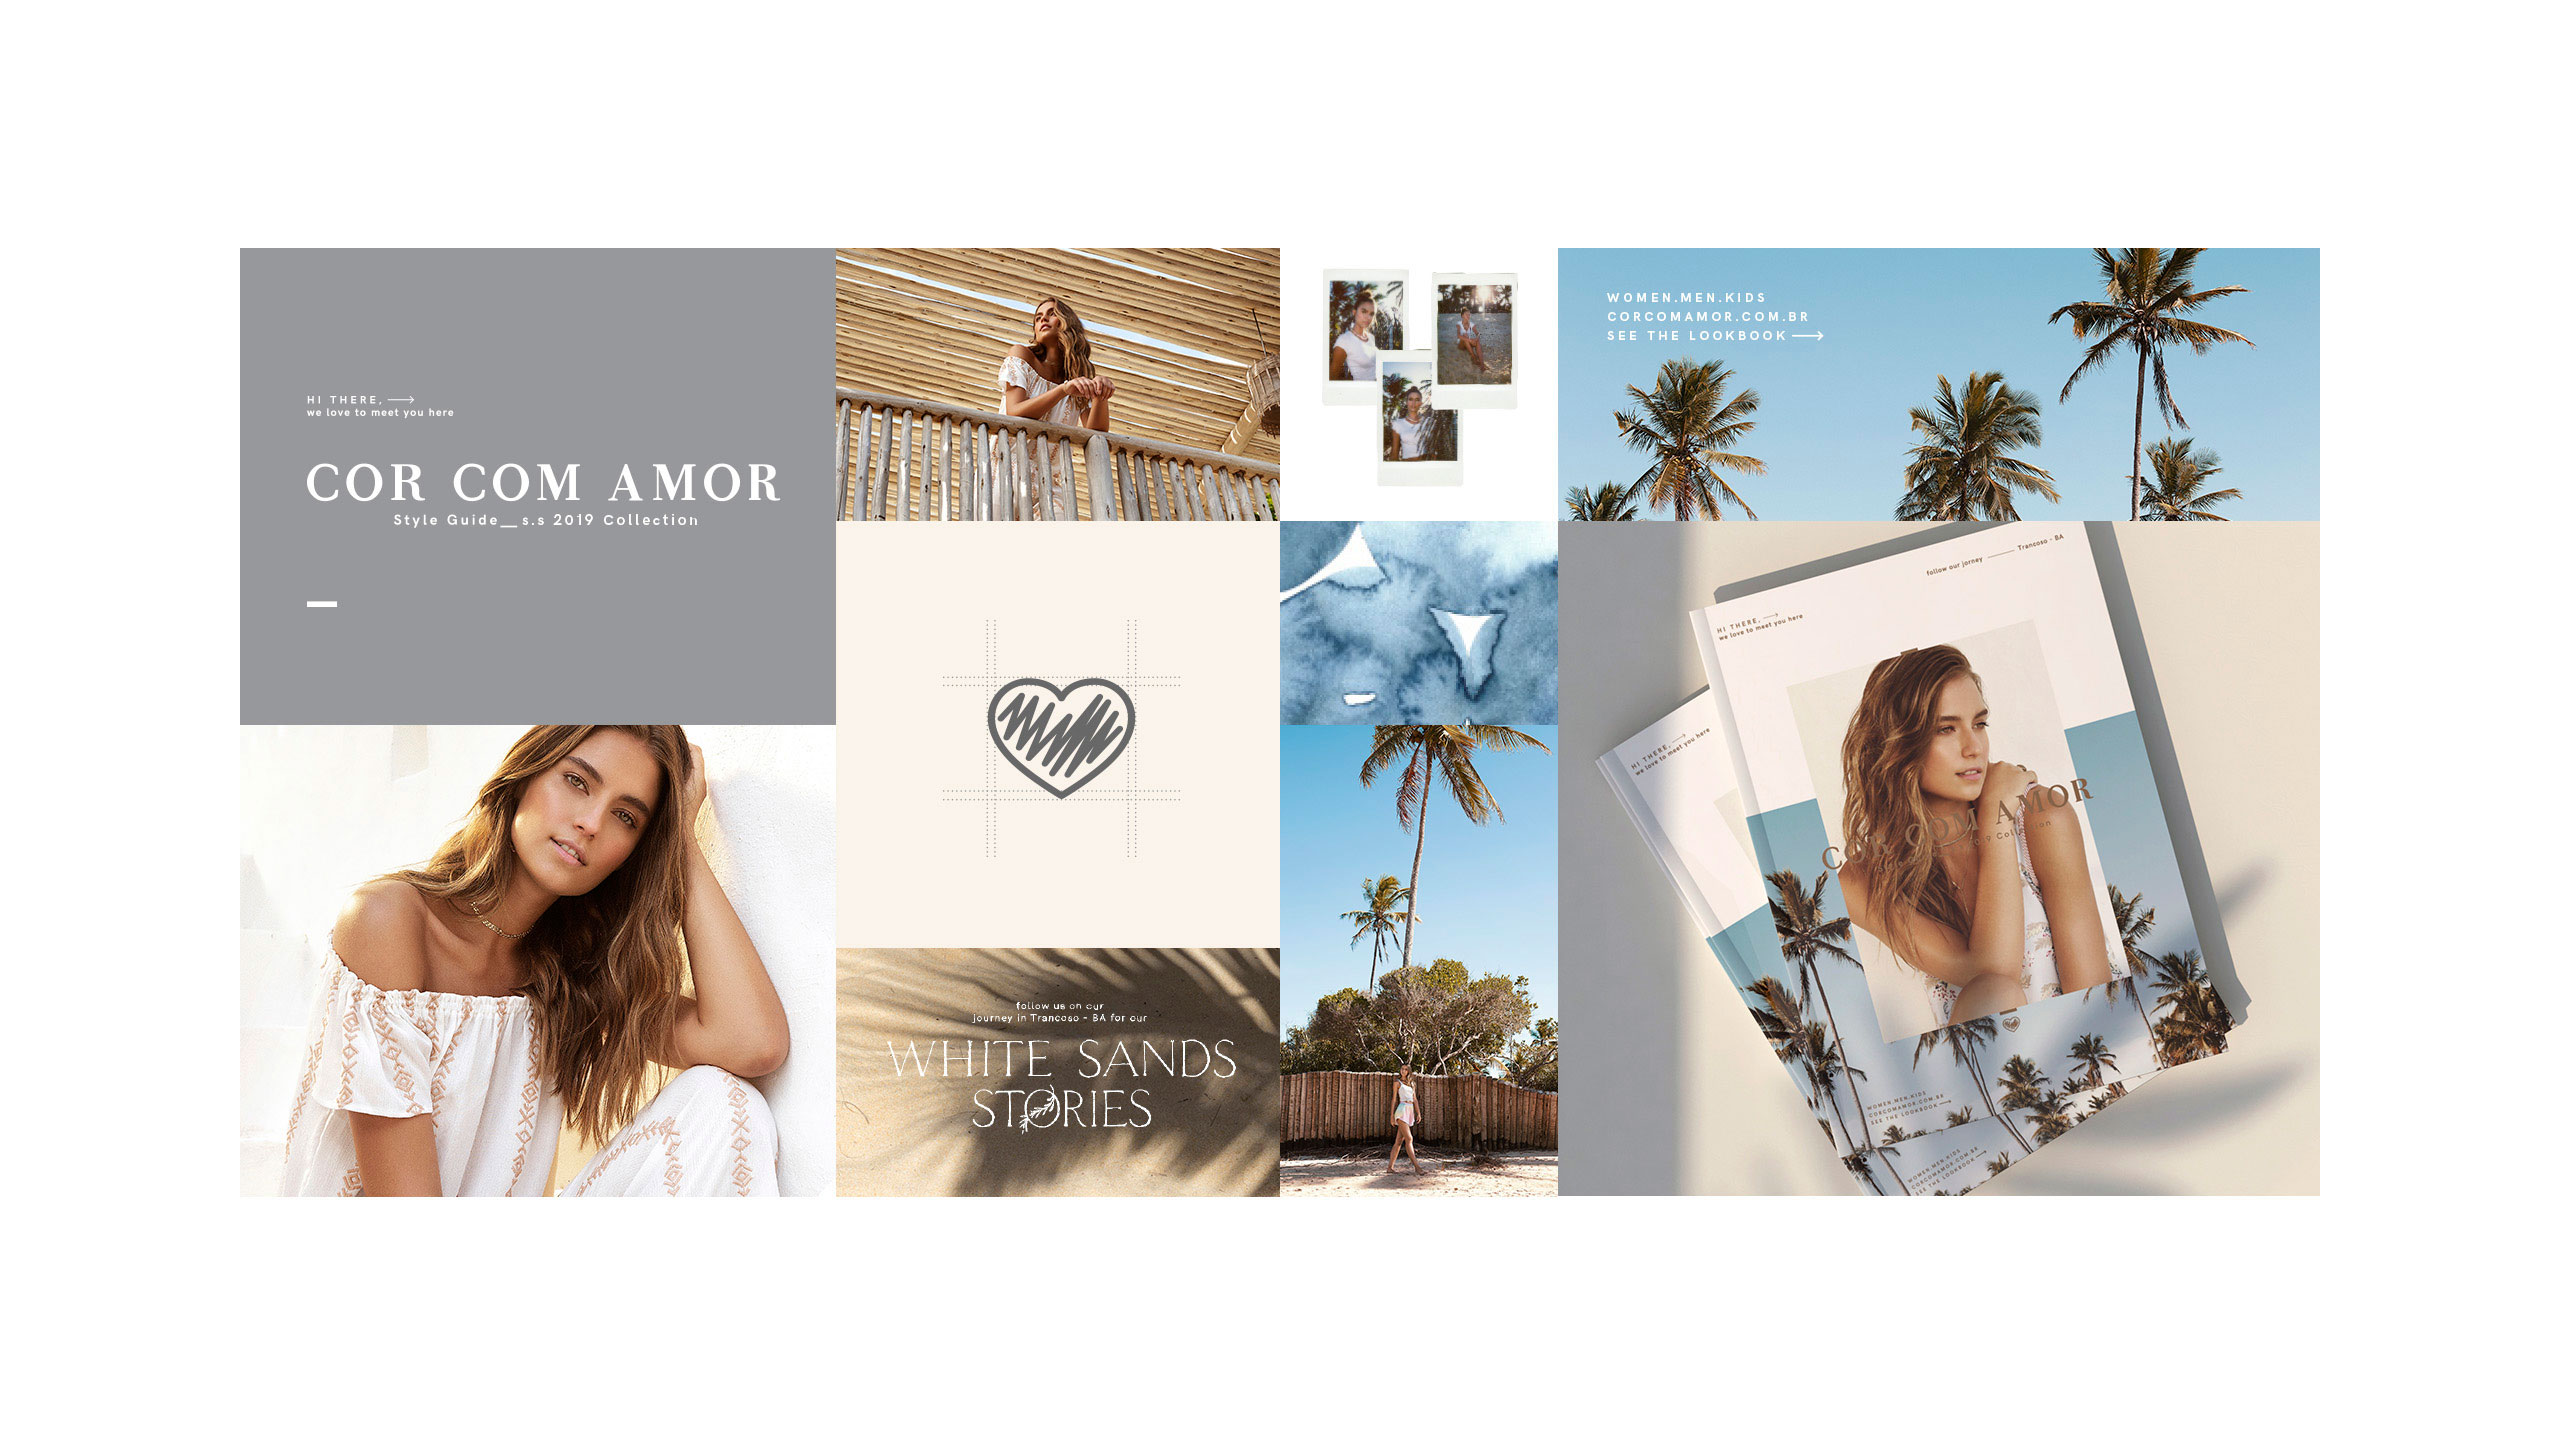 estudio de design carpintaria para Cor com Amor catalogo pocket imagens campanha